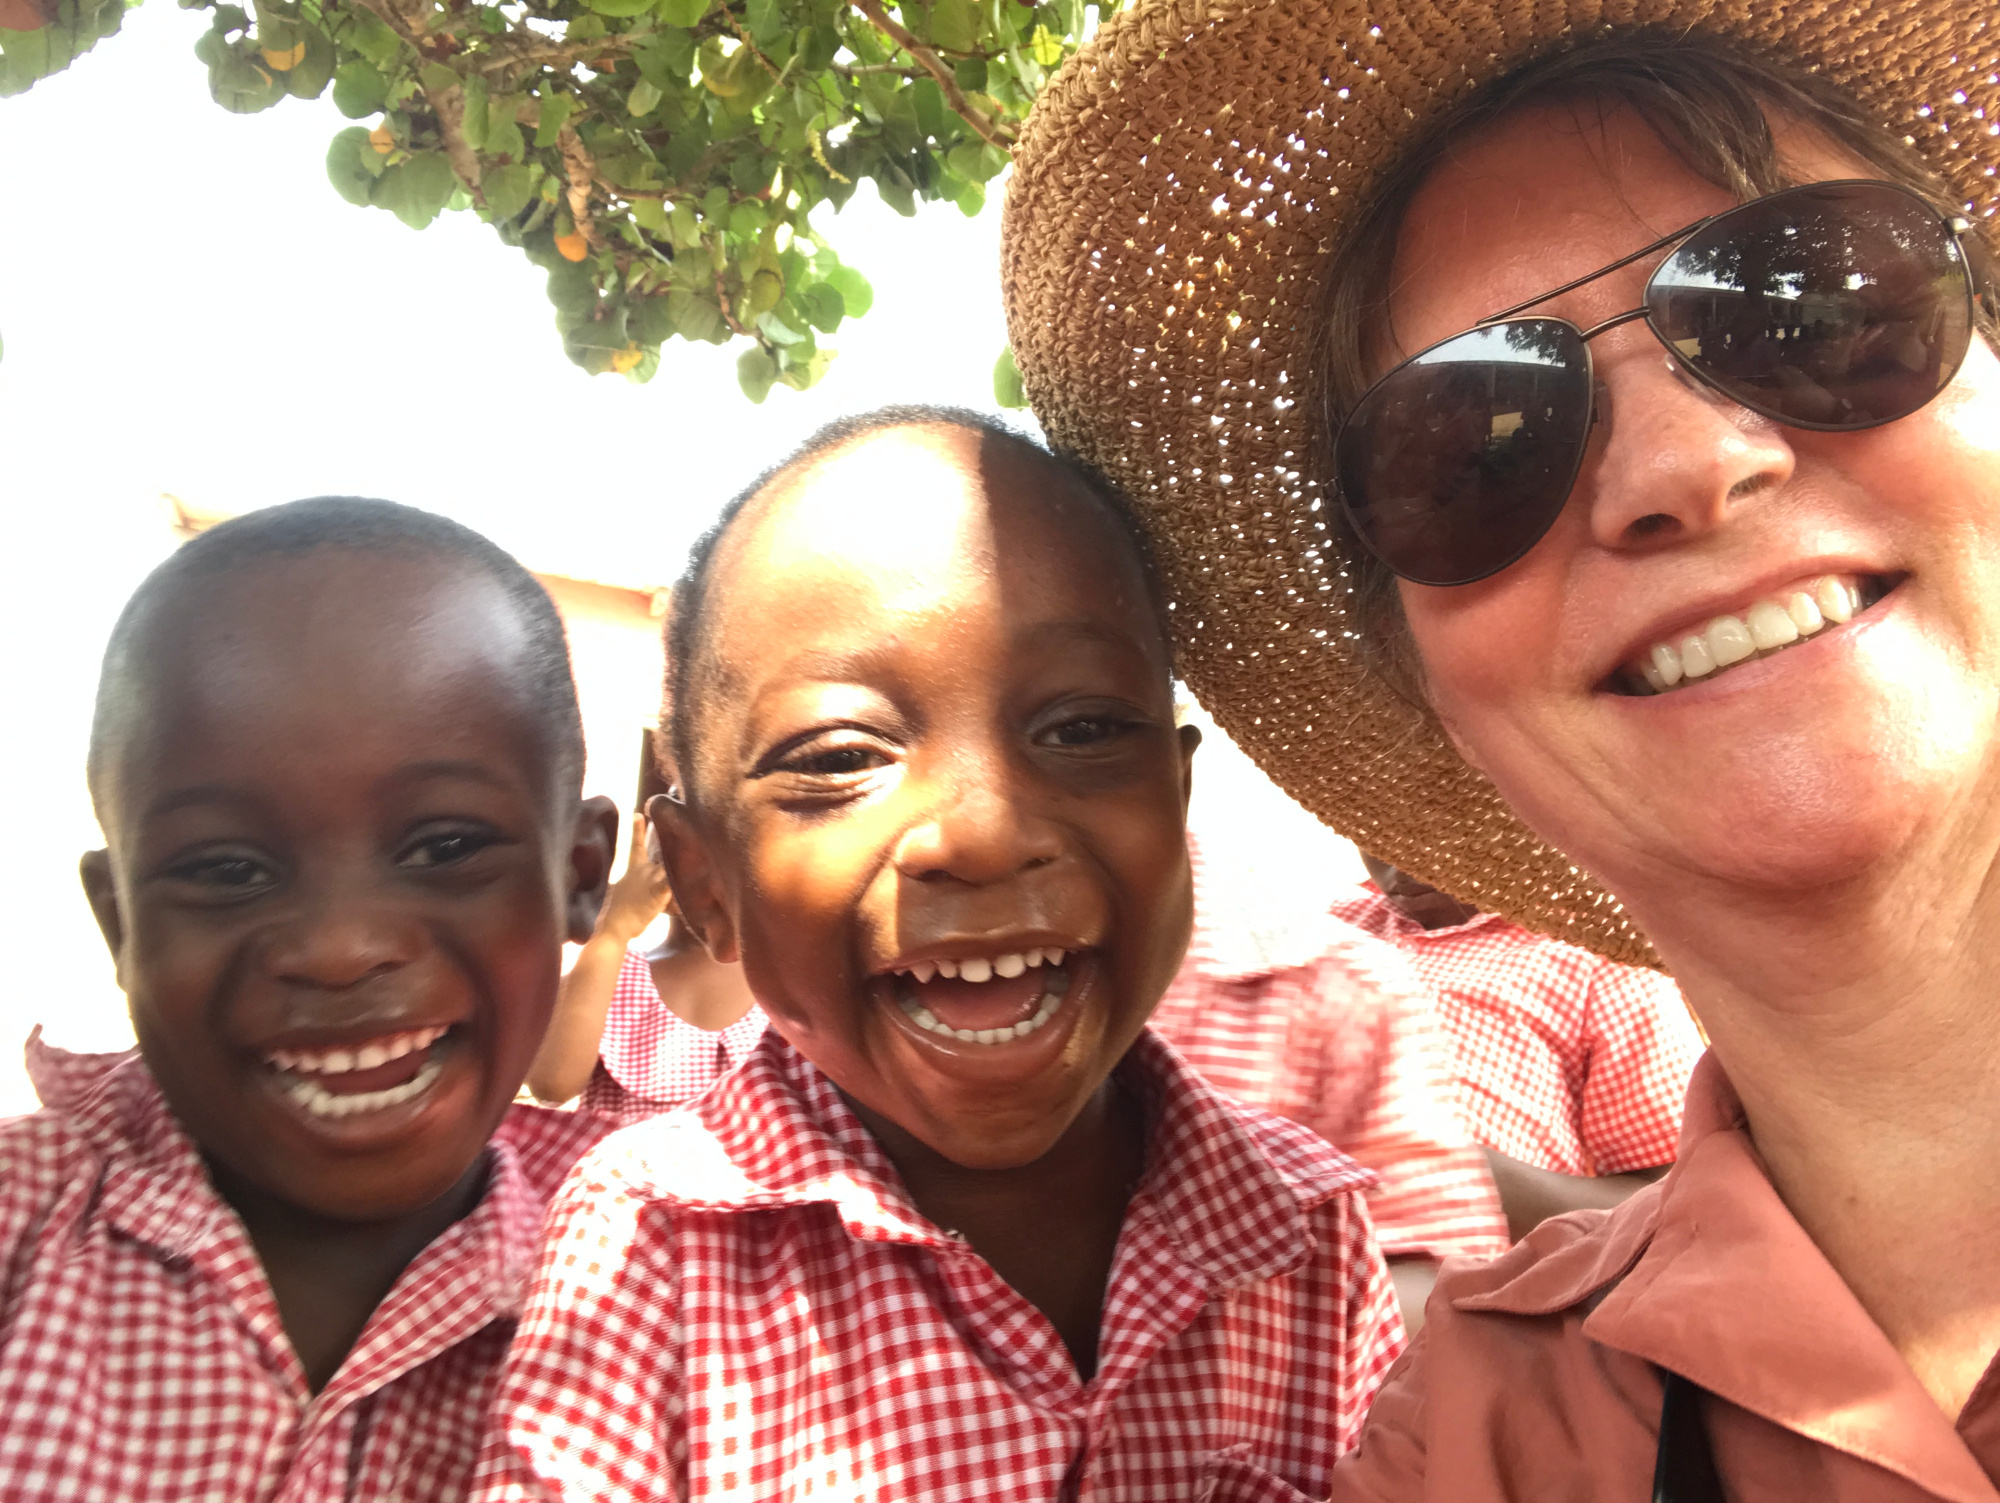 Ghana 2017 volunteering trip